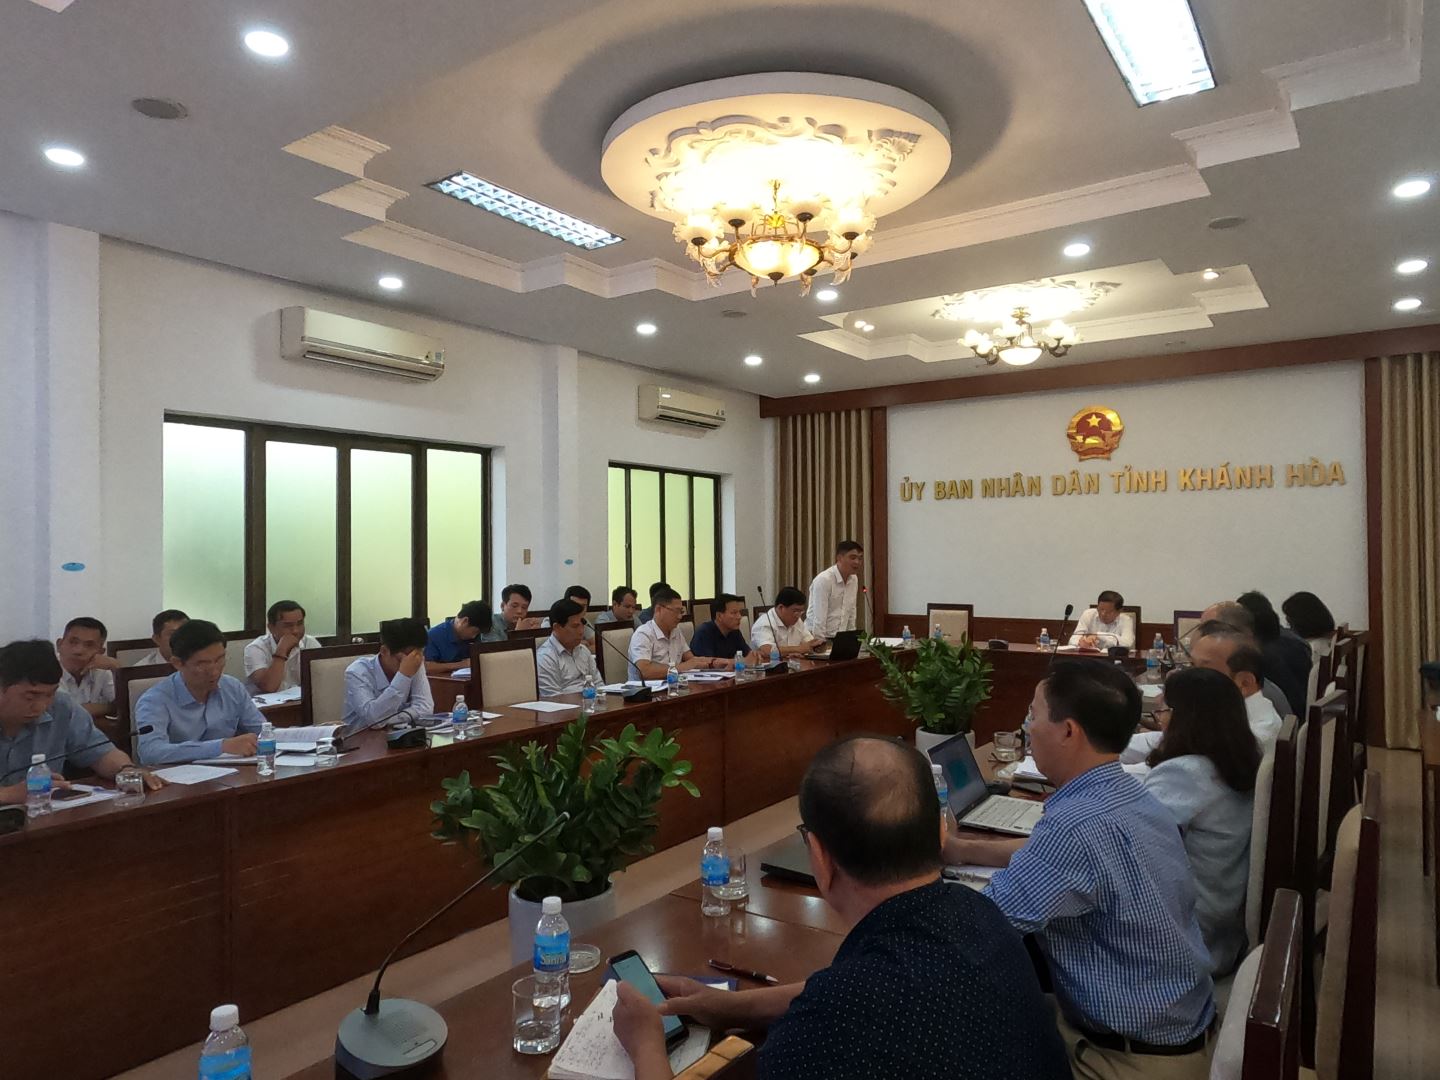 Ông Hồ Tấn Quang – Giám Đốc Ban Quản lý dự án Phát triển Tỉnh Khánh Hòa báo cáo tại cuộc họp về tình hình thực hiện dự án